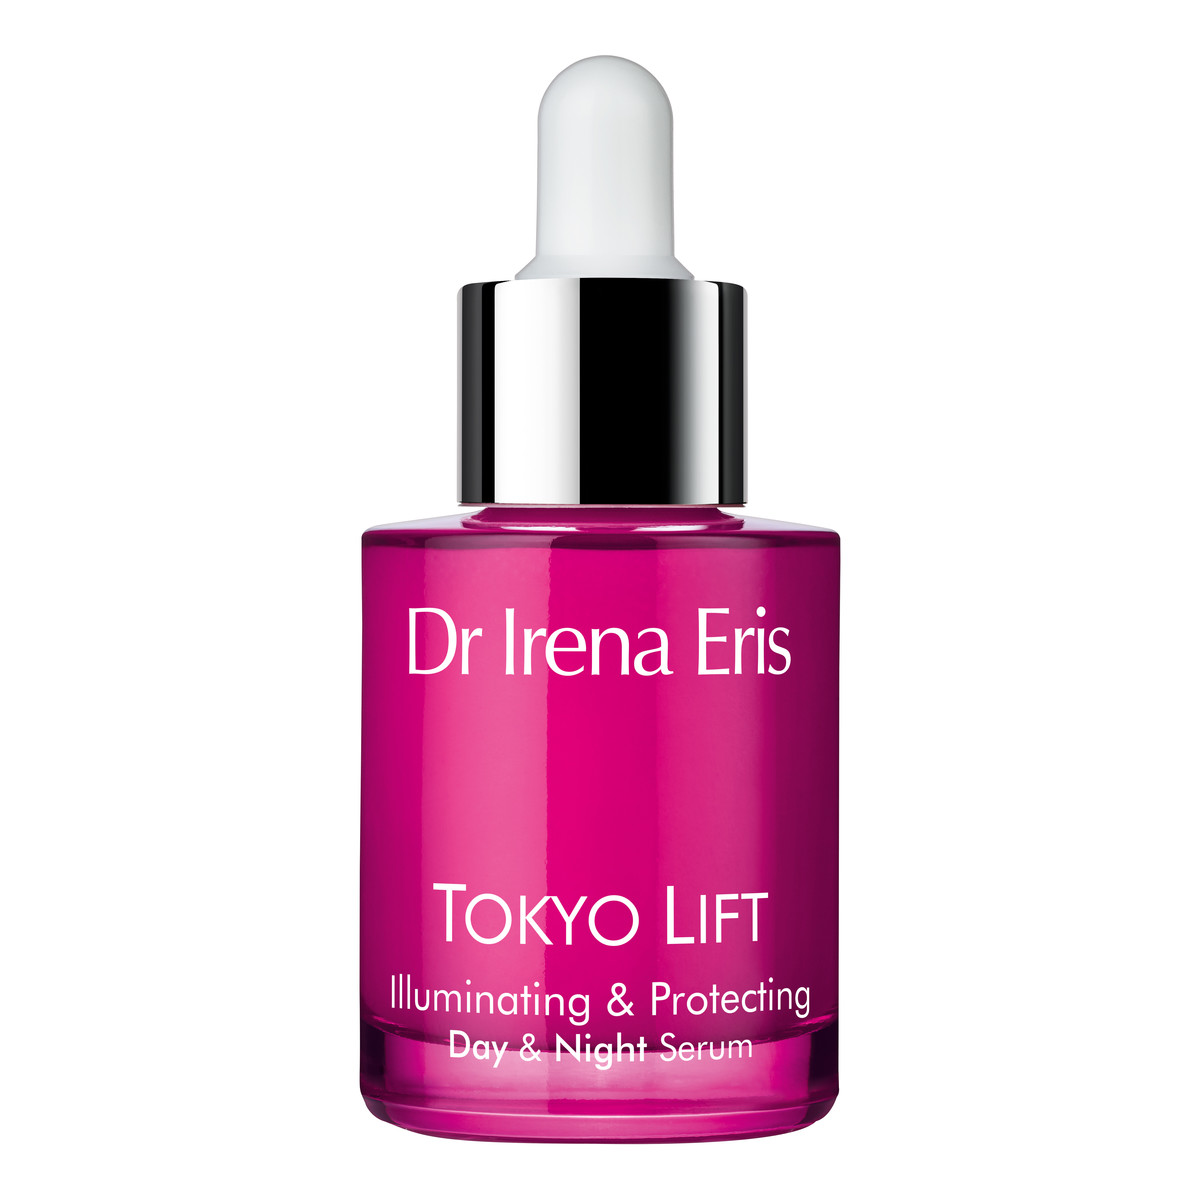 Dr Irena Eris Tokyo Lift 35+ Illuminating & Protecting Przeciwstarzeniowe serum rozświetlające 30ml